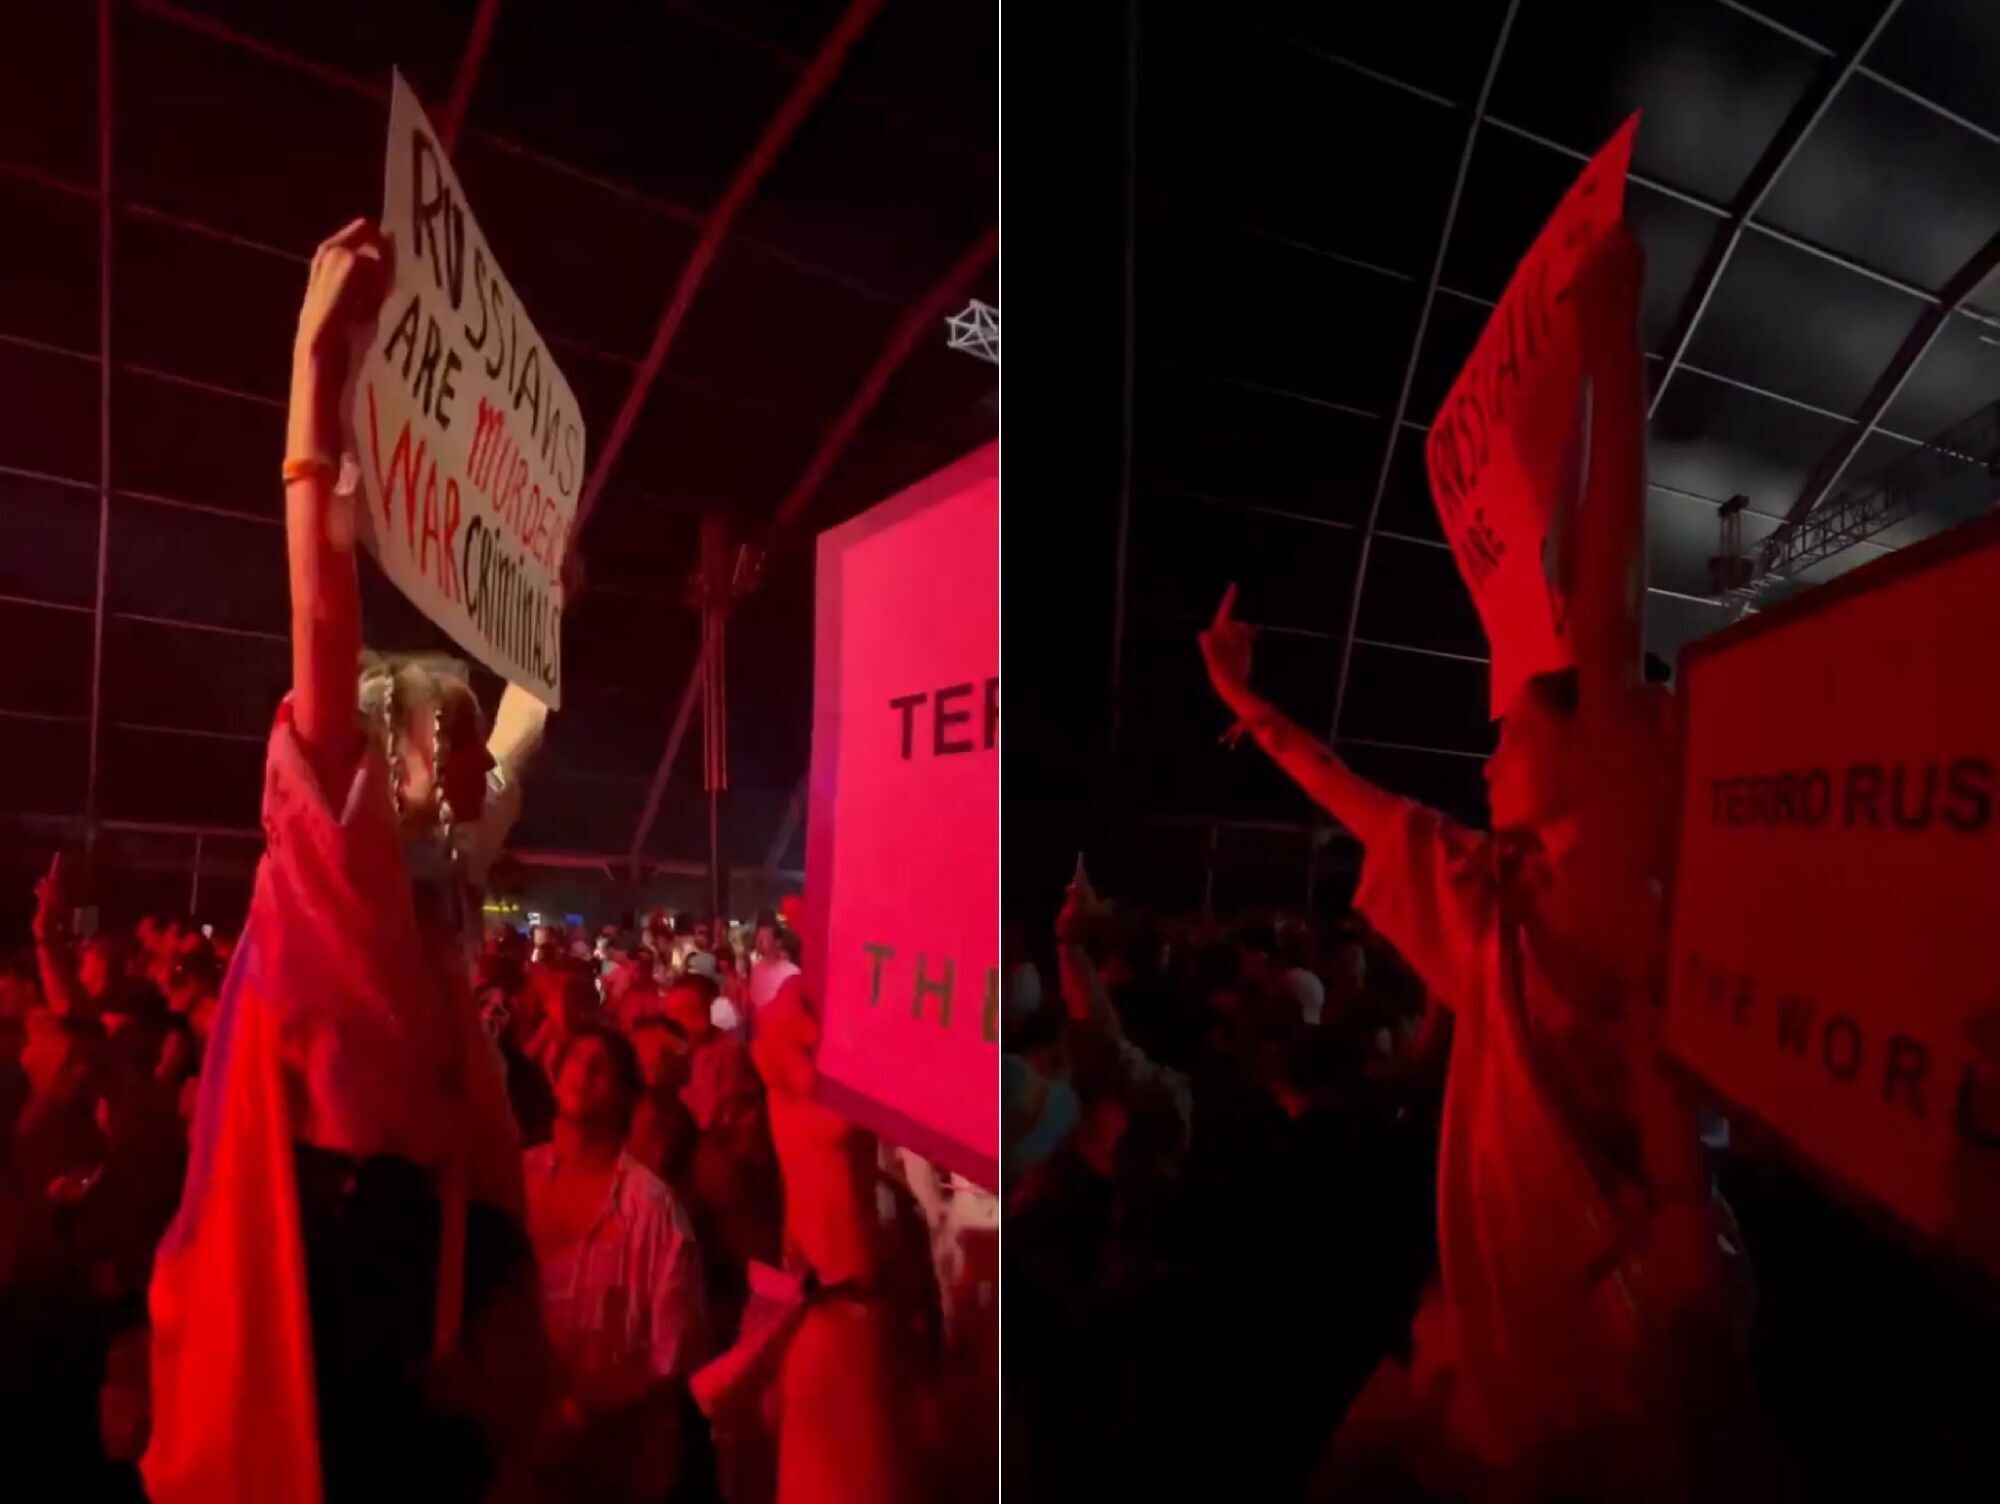 Скандал вокруг Sziget. Алина Паш пришла на концерт российской группы с антивоенным плакатом, но украинцы не оценили